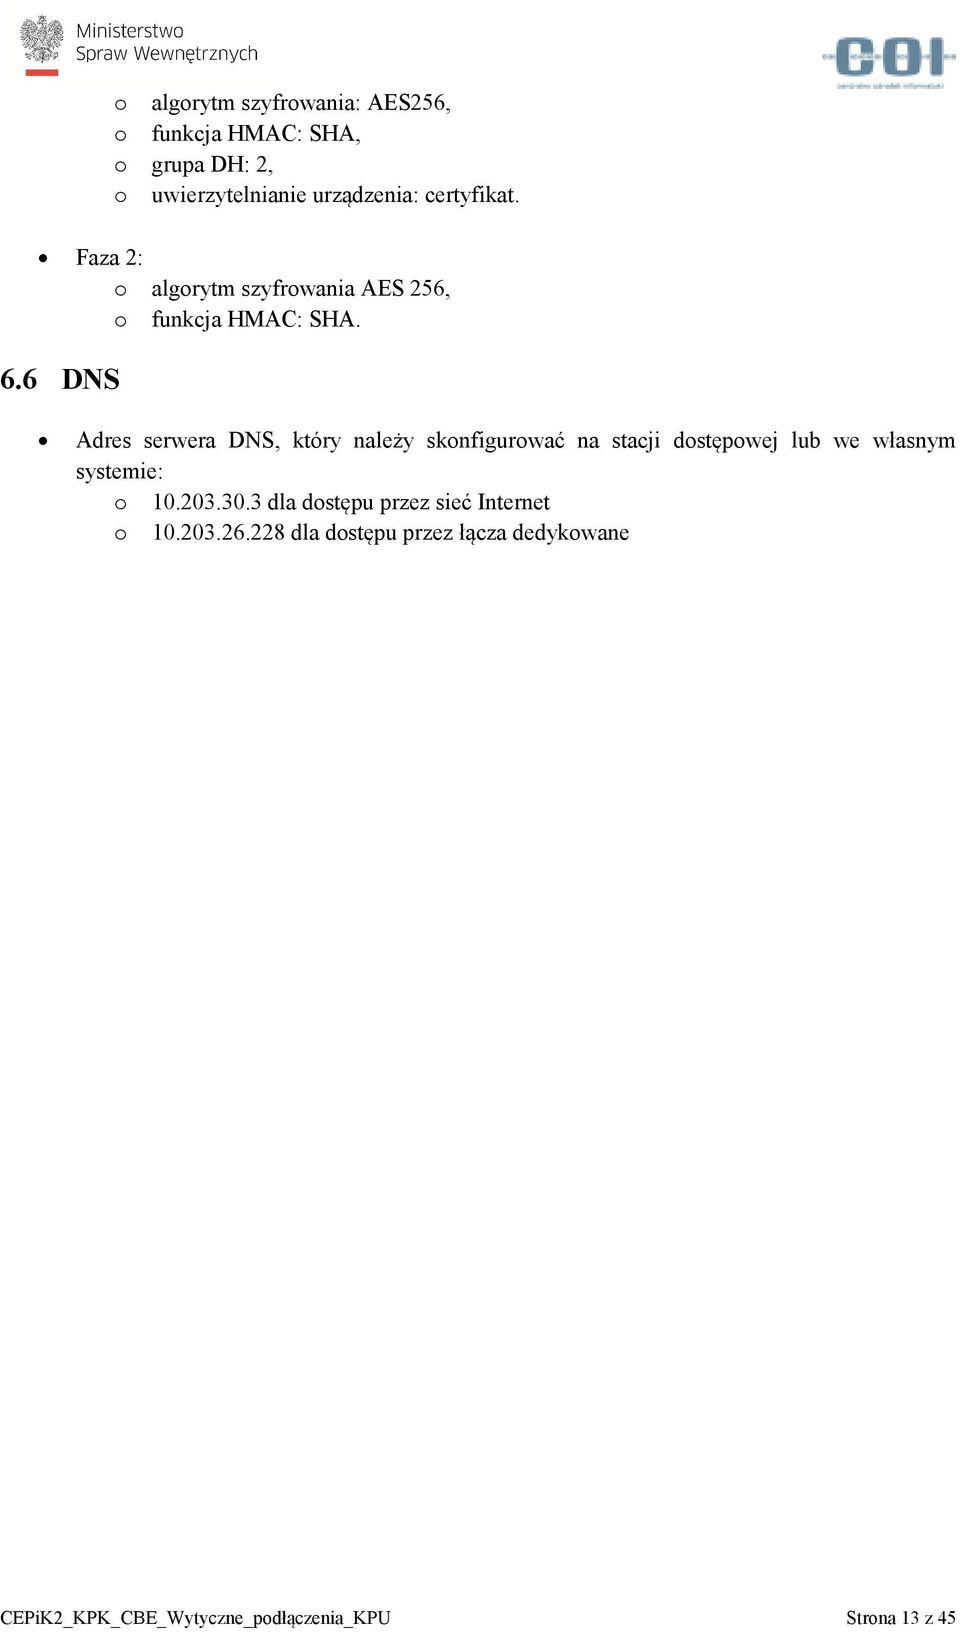 6 DNS Adres serwera DNS, który należy skonfigurować na stacji dostępowej lub we własnym systemie: o 10.